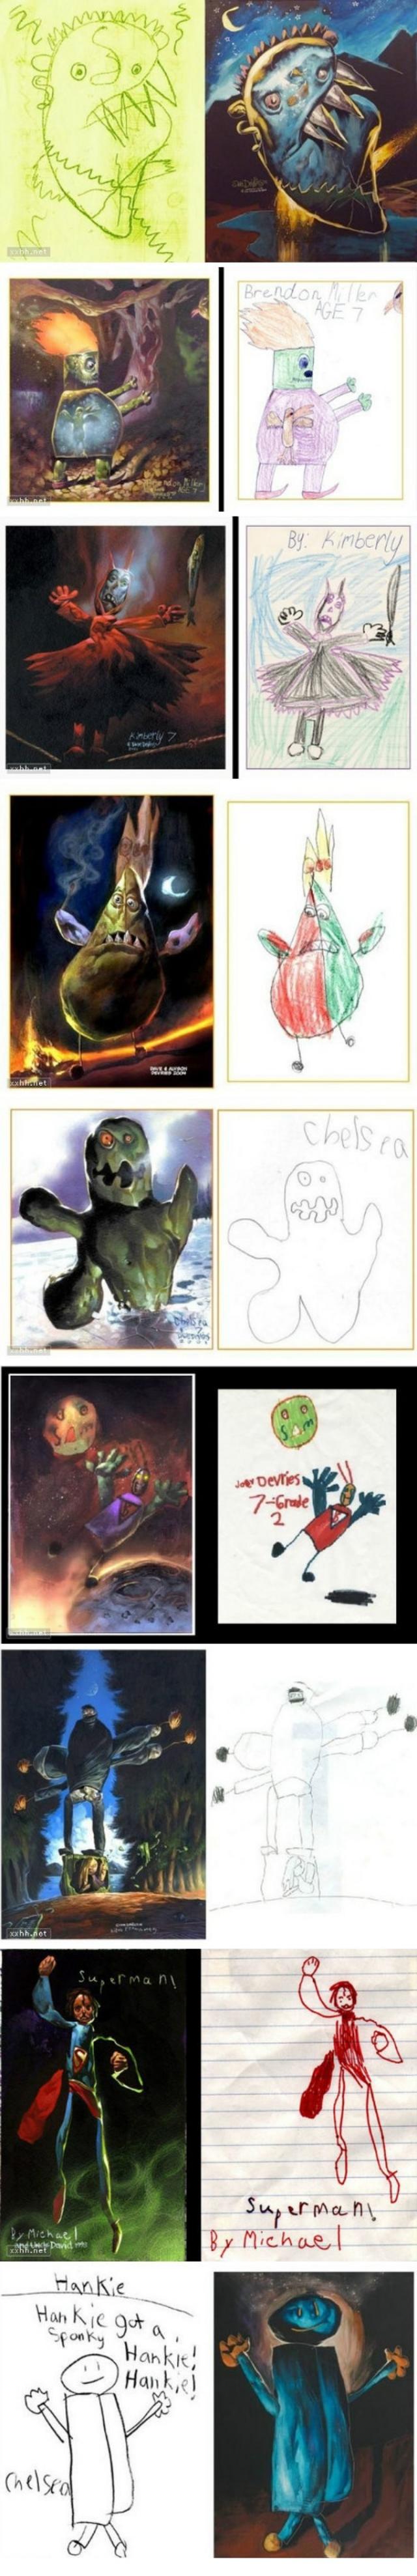 孩子画恐怖的画心理图片